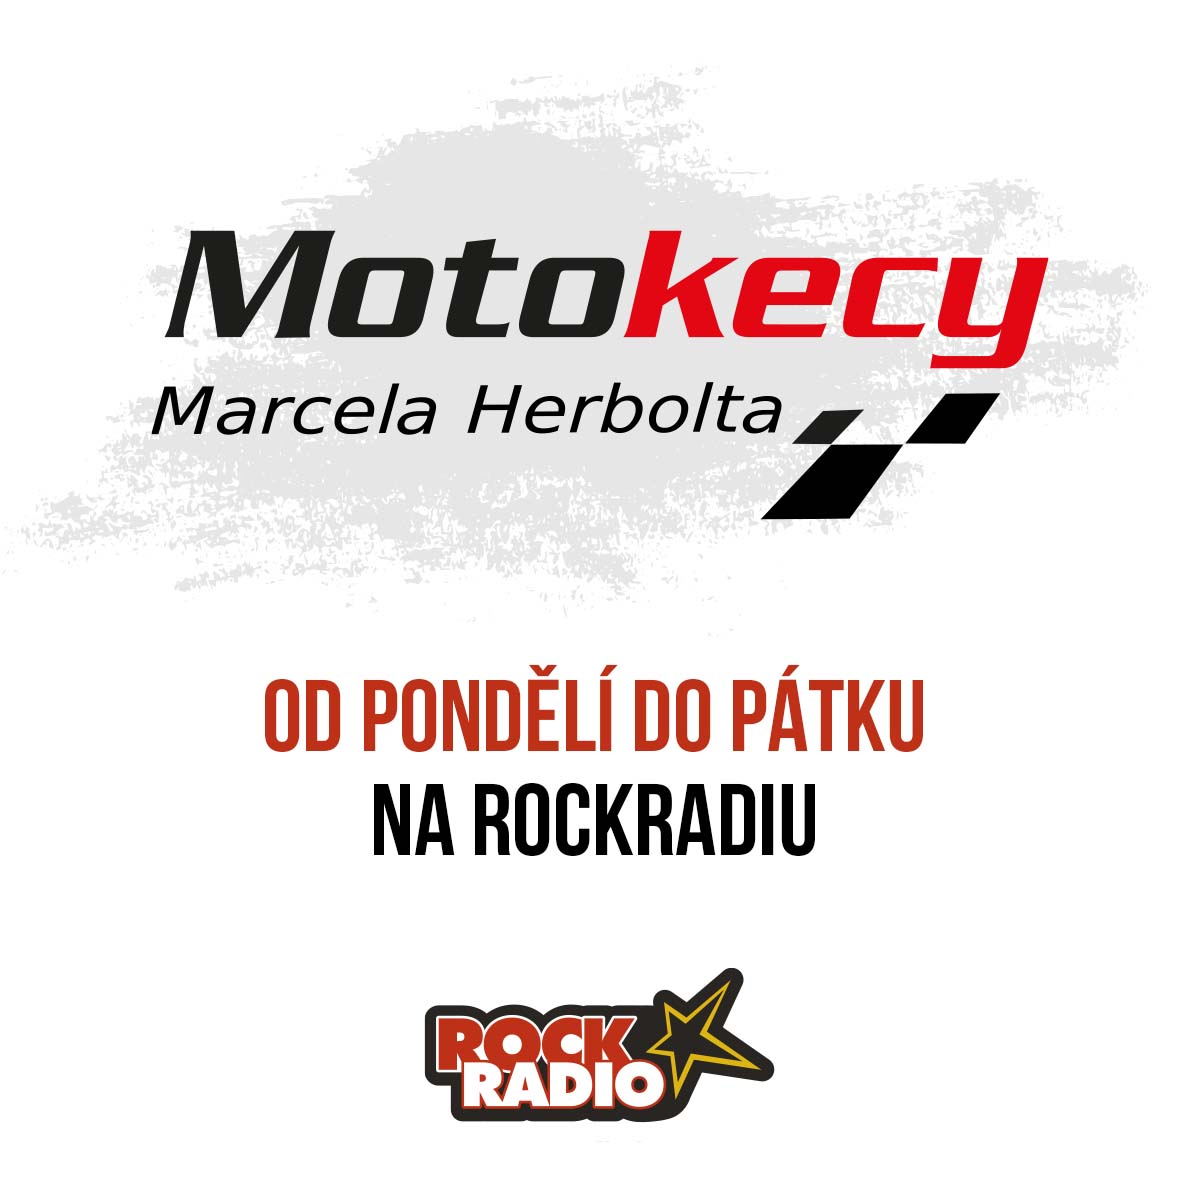 Motokecy Marcela Herbolta na středu 04. října